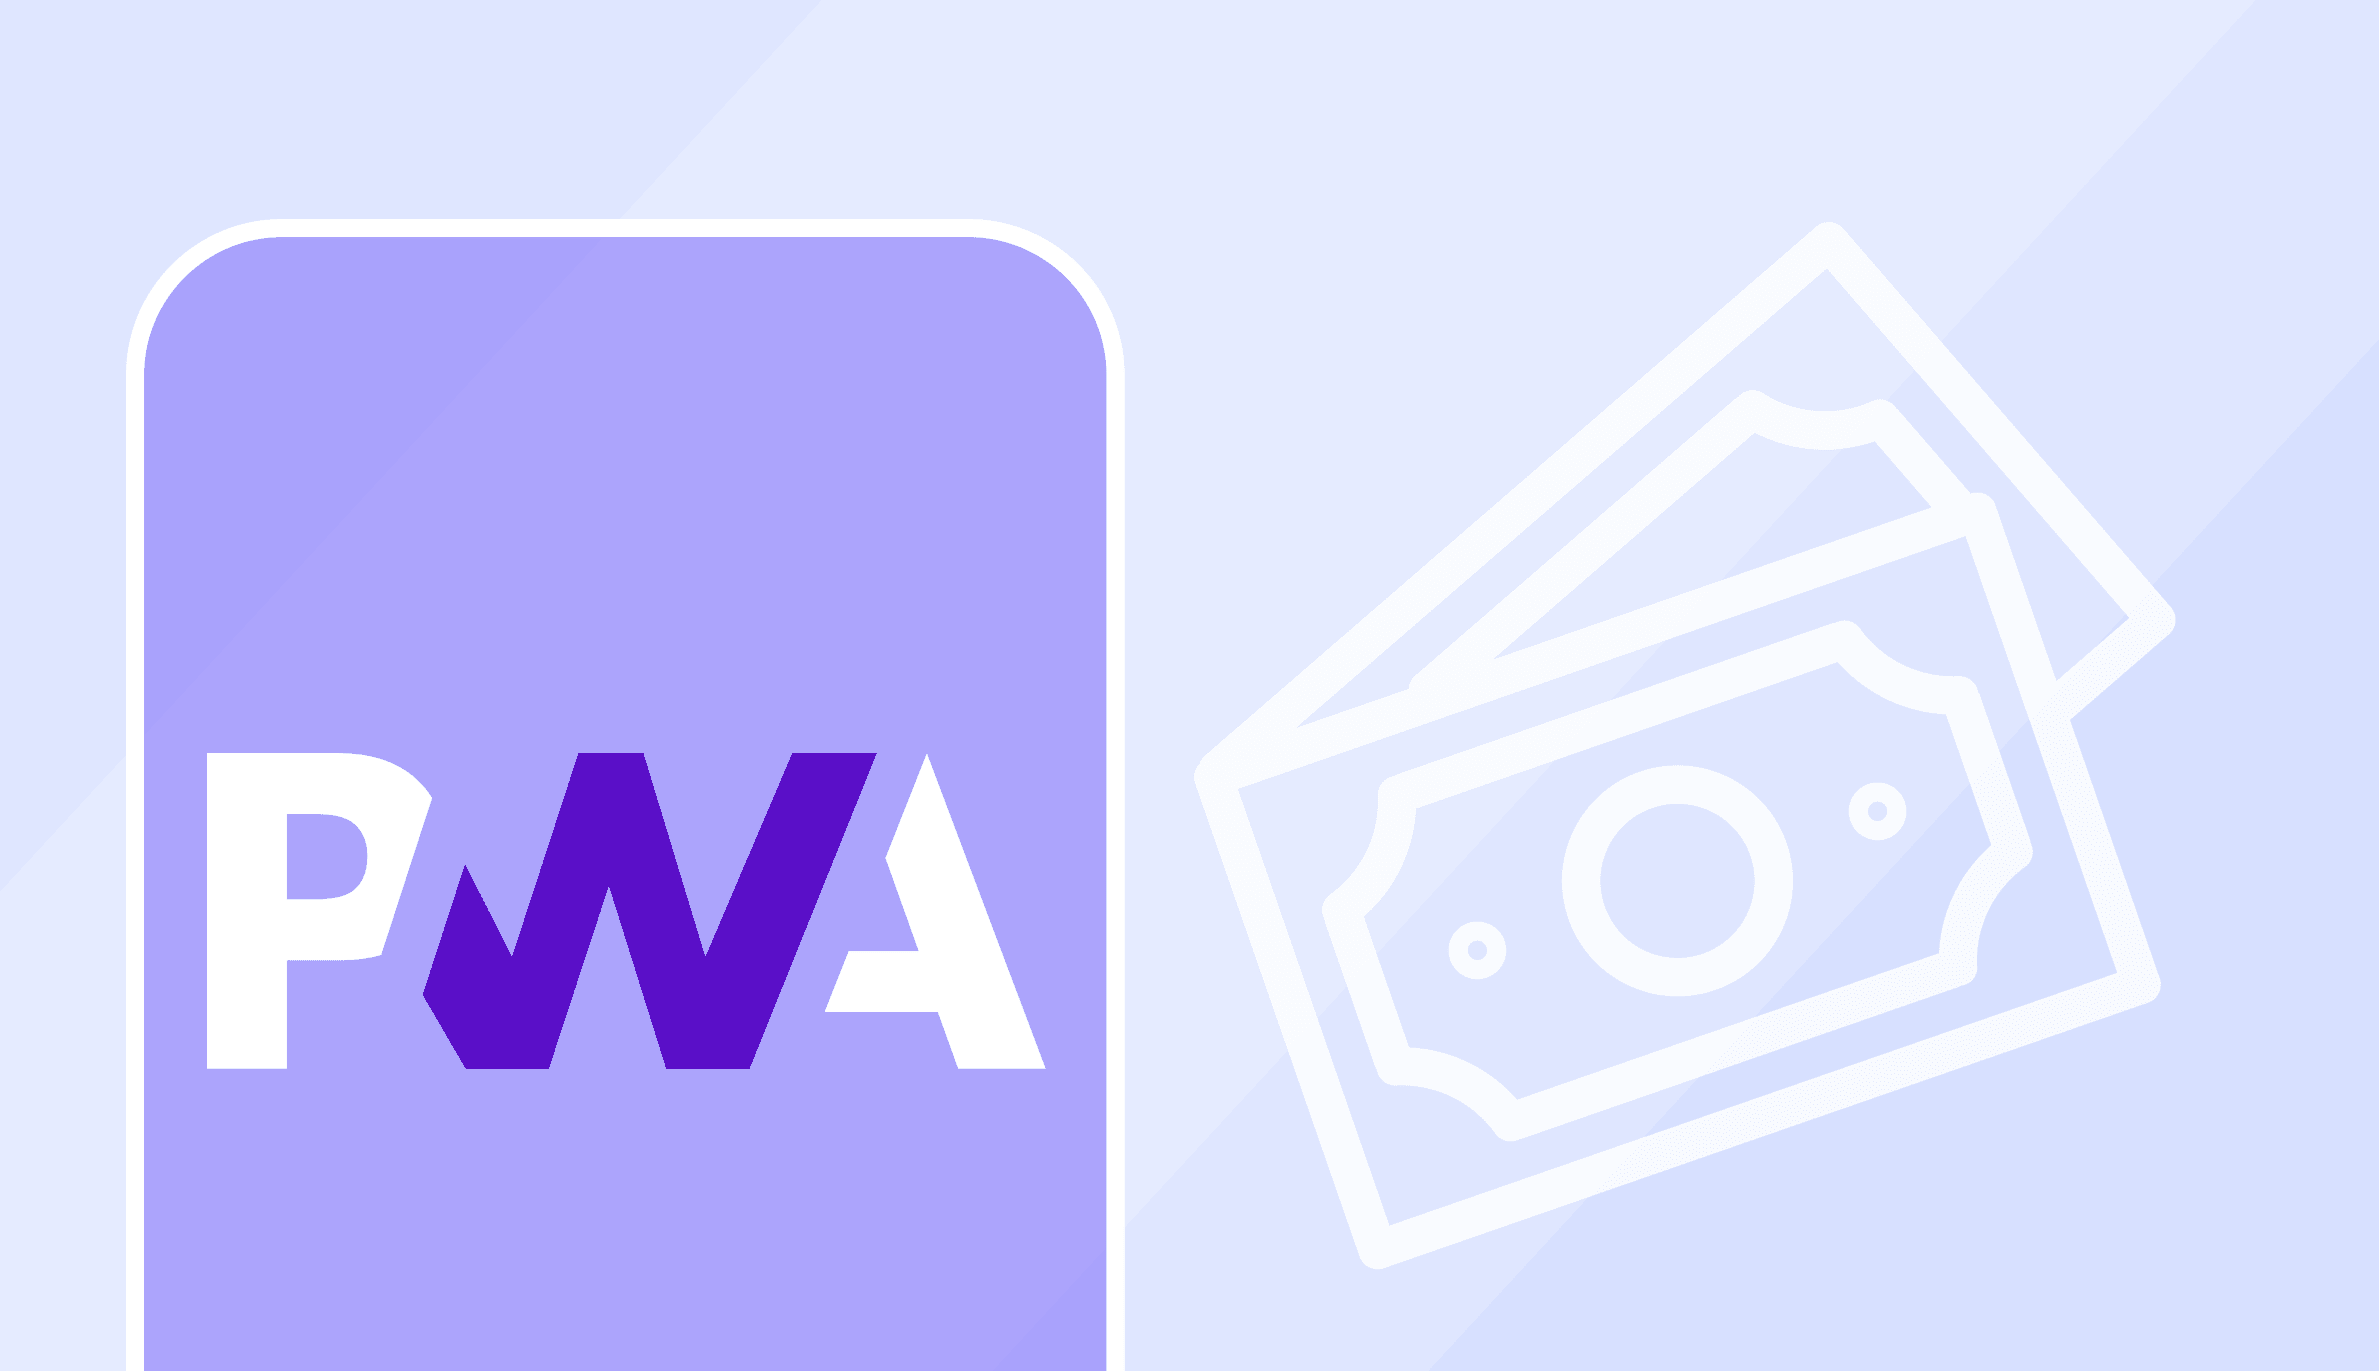 PWA приложения для бизнеса - принцип работы и преимущества